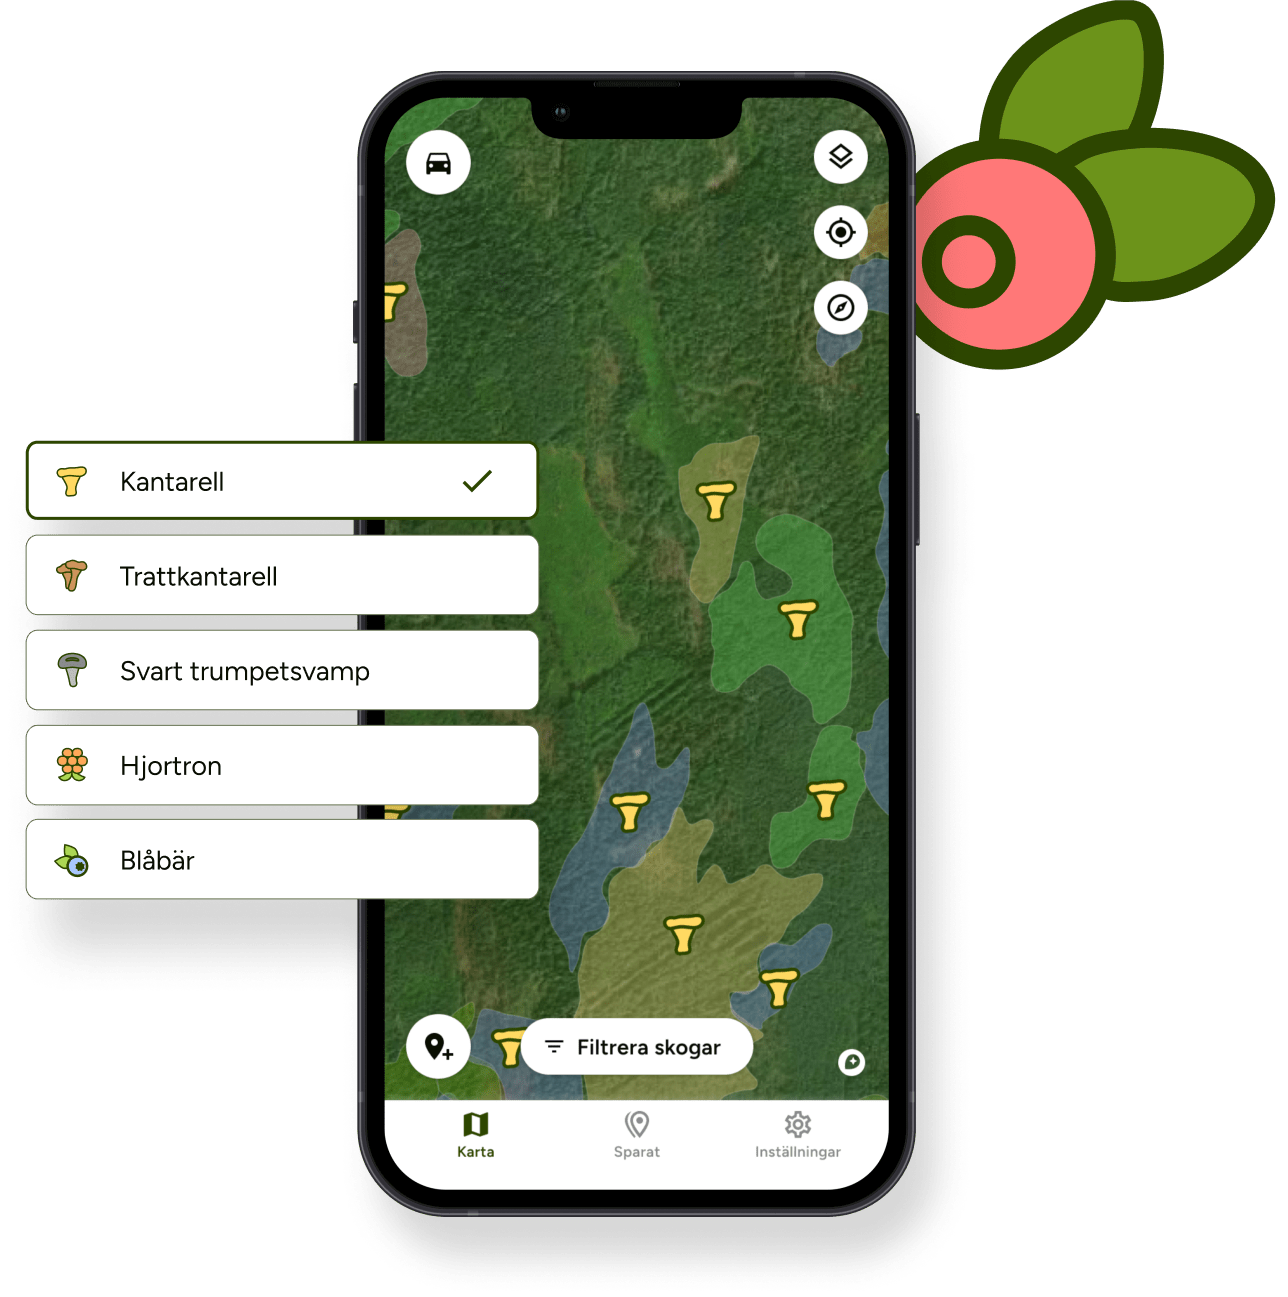 Hitta Skog-appen med filter för att hitta skogar med svamp.